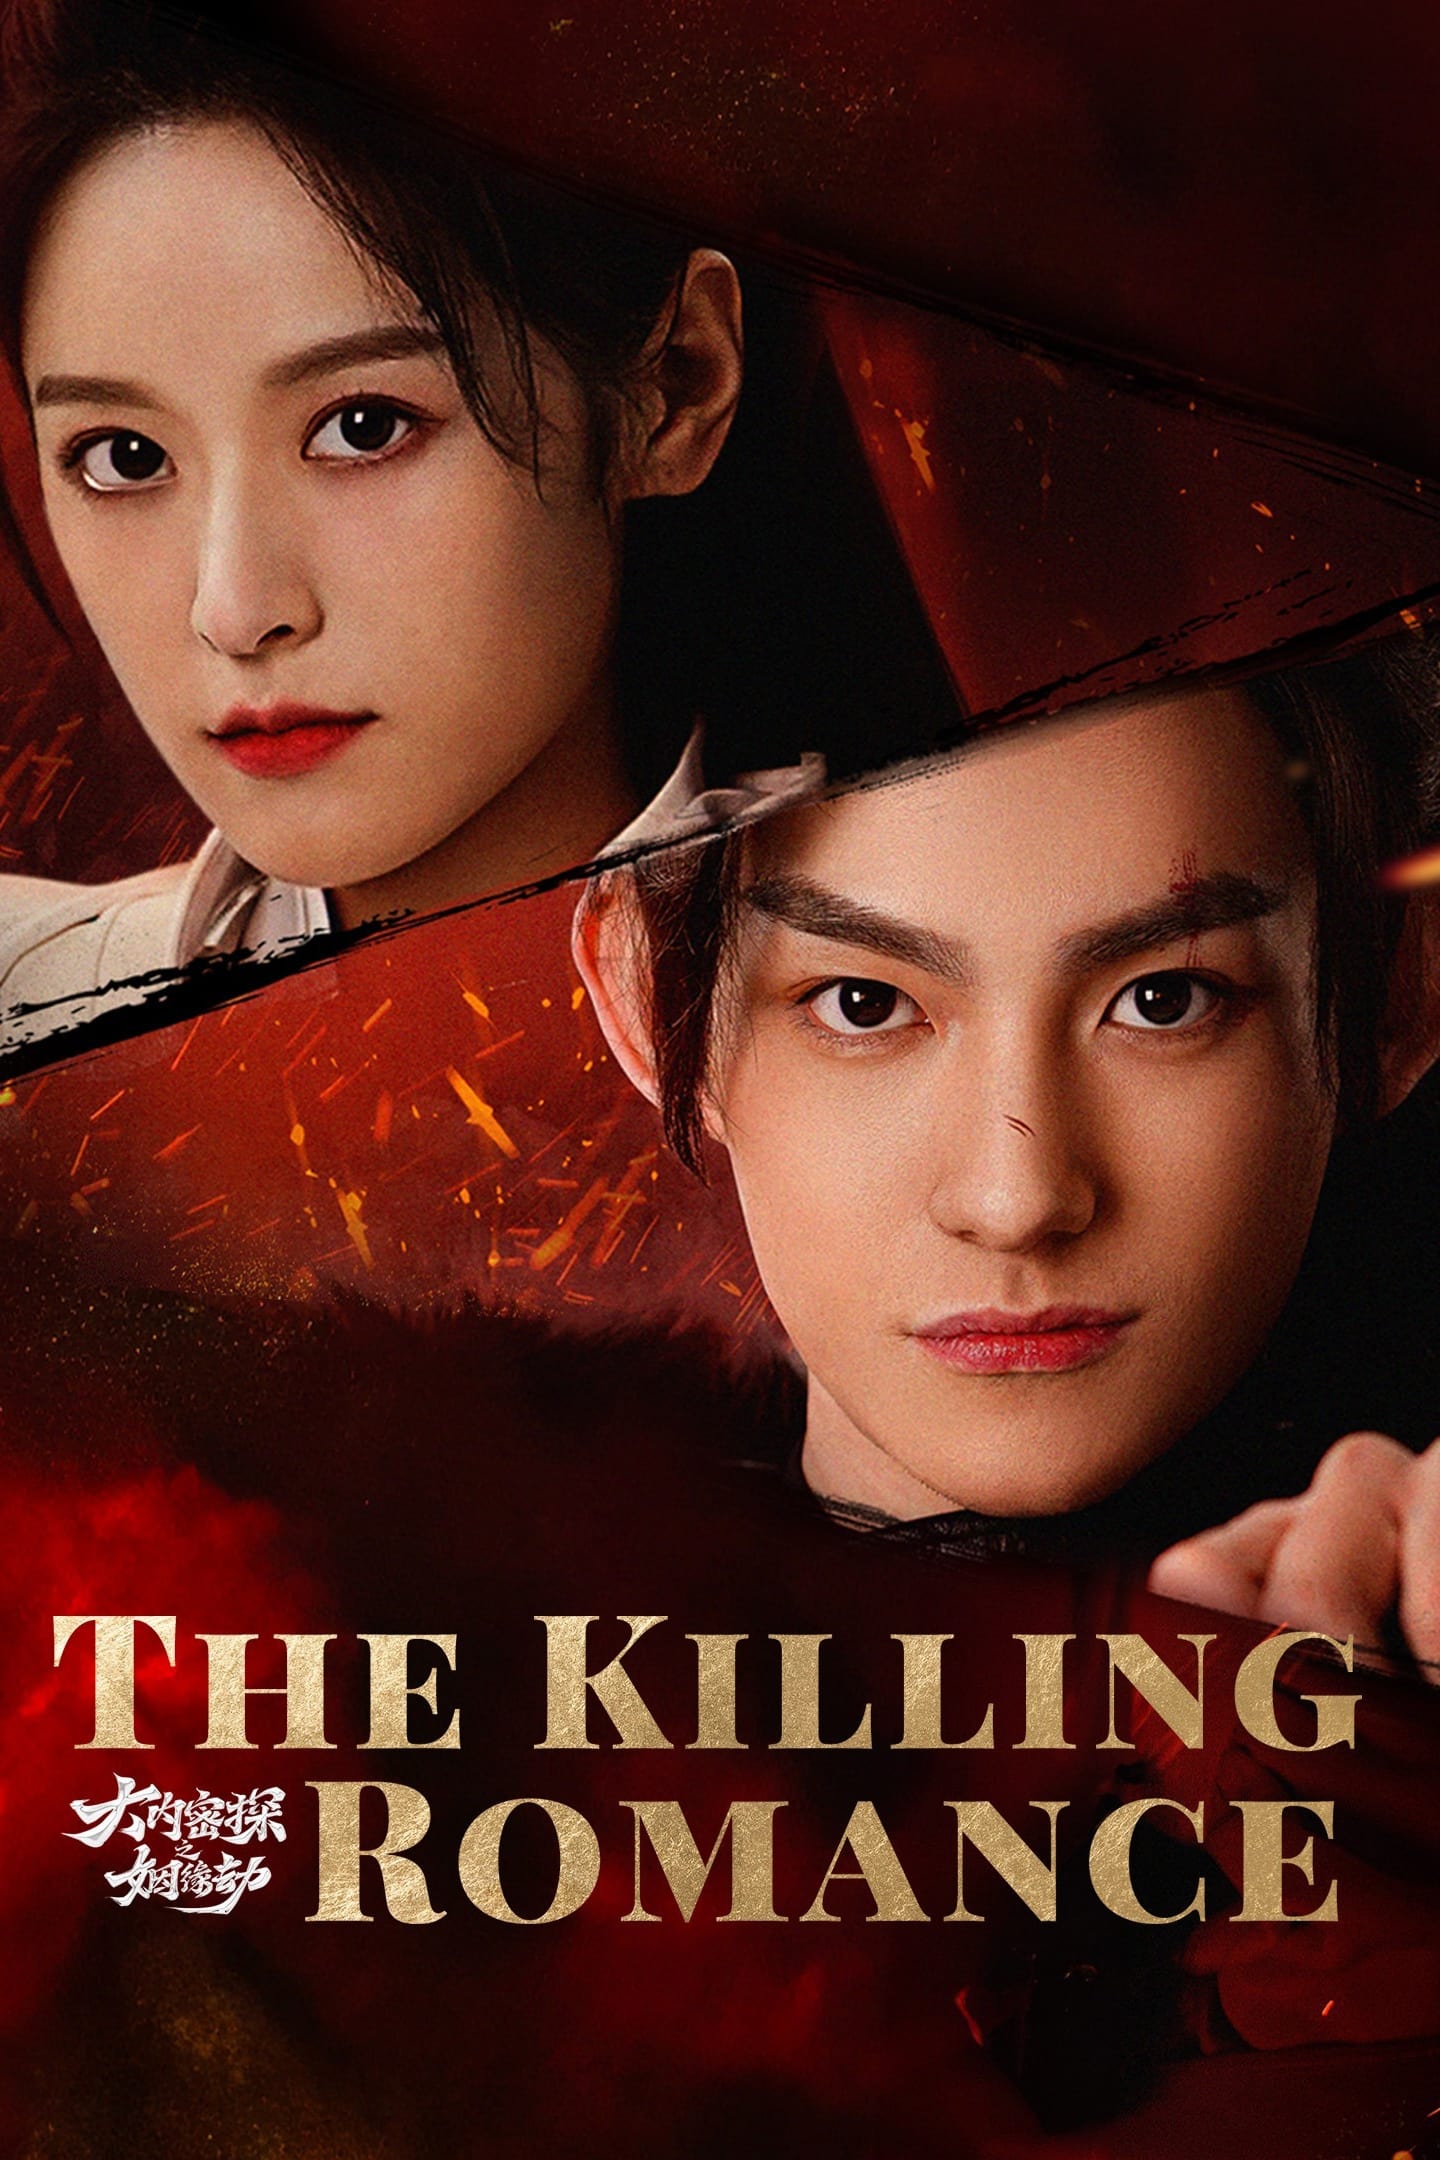 The Killing Romance